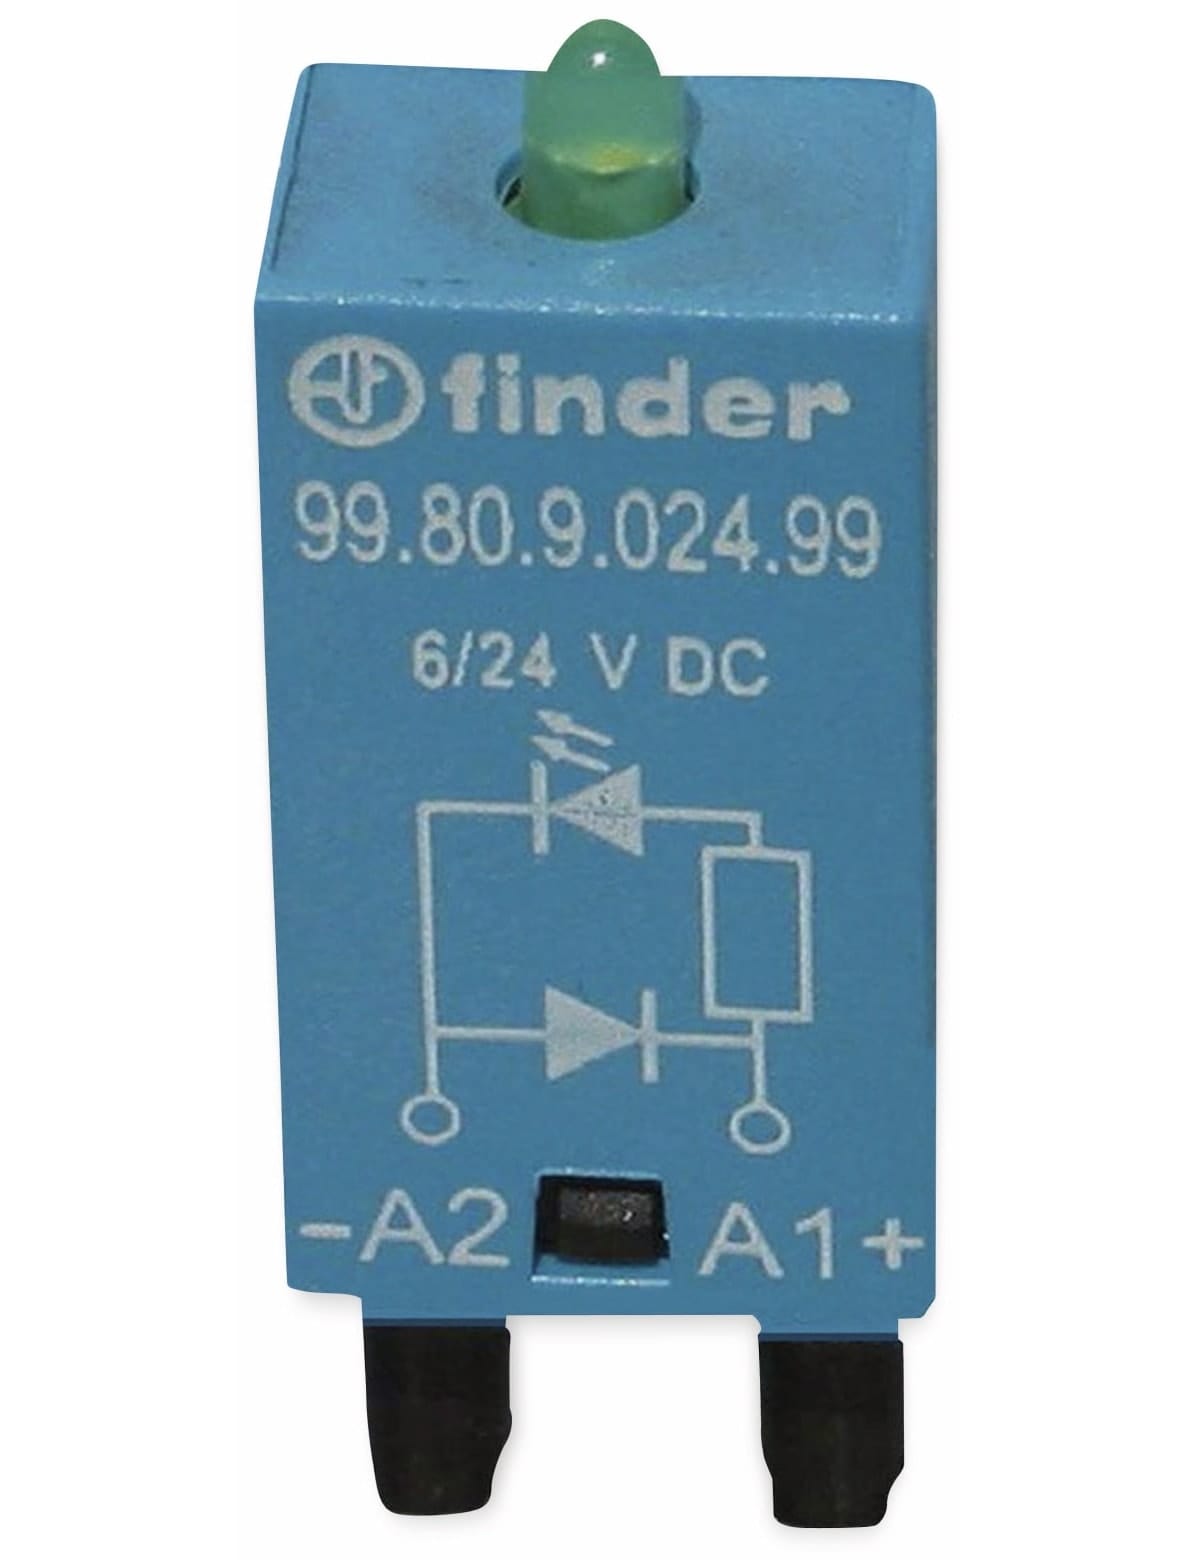 FINDER Steckmodul / Freilaufdiode, 99.80.9.024.99, für Serie 94, 95